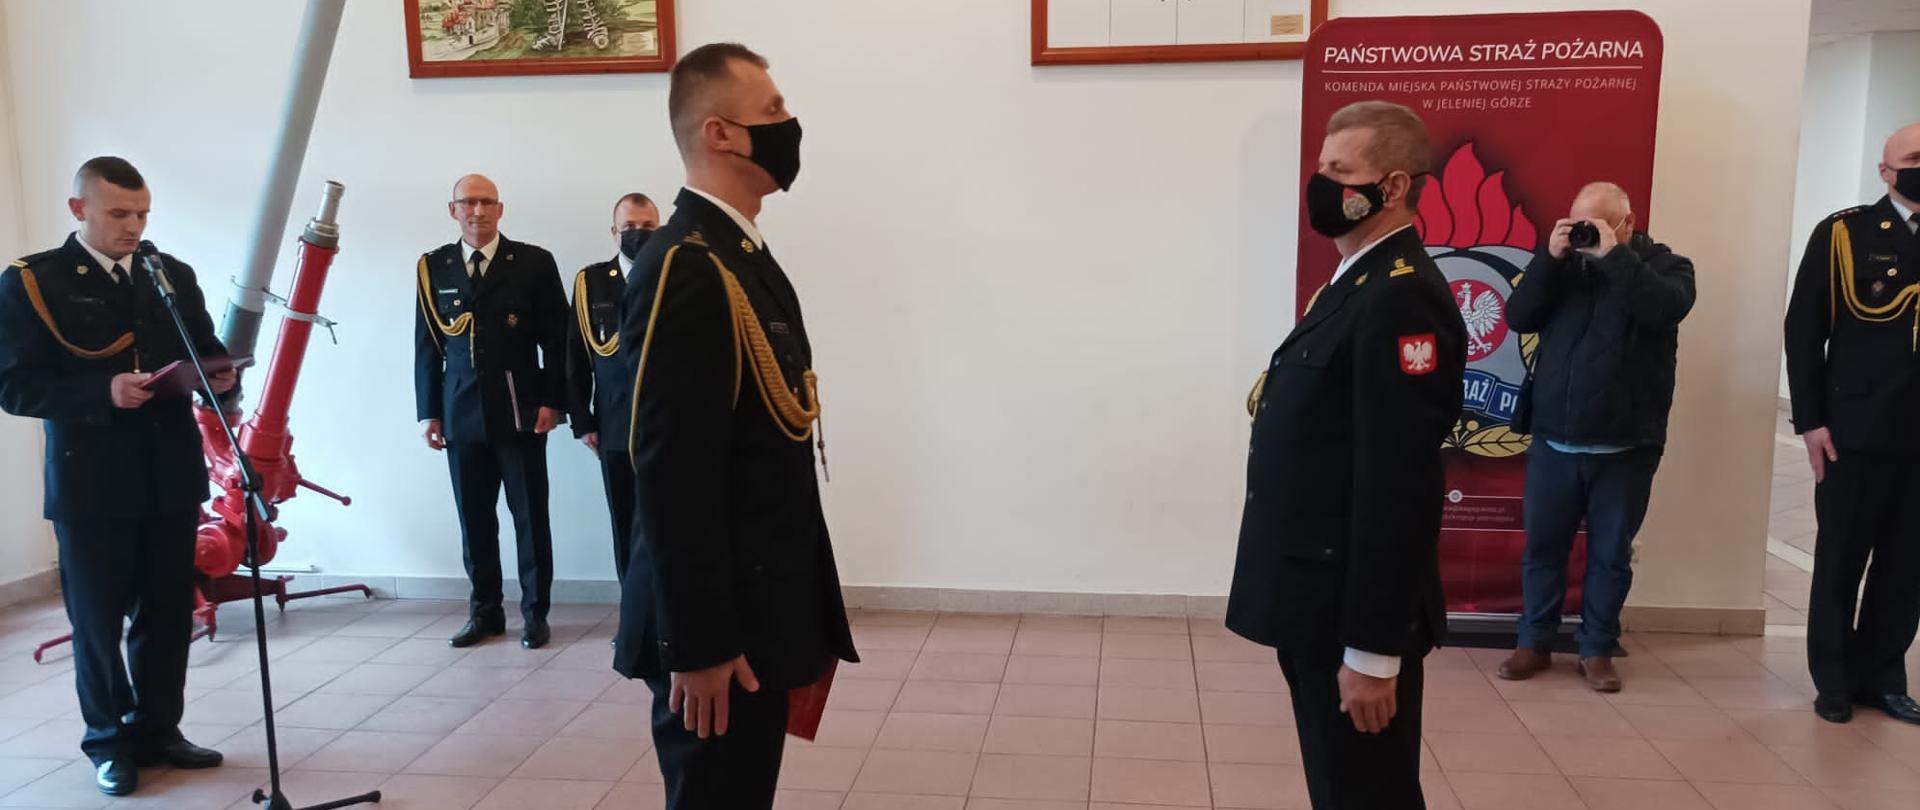 Na zdjęciu widać dwóch komendantów, jeden z nich to Dolnośląski Komendant Wojewódzki drugi to przejmujący obowiązki Komendanta Miejskiego w Jeleniej Górze.